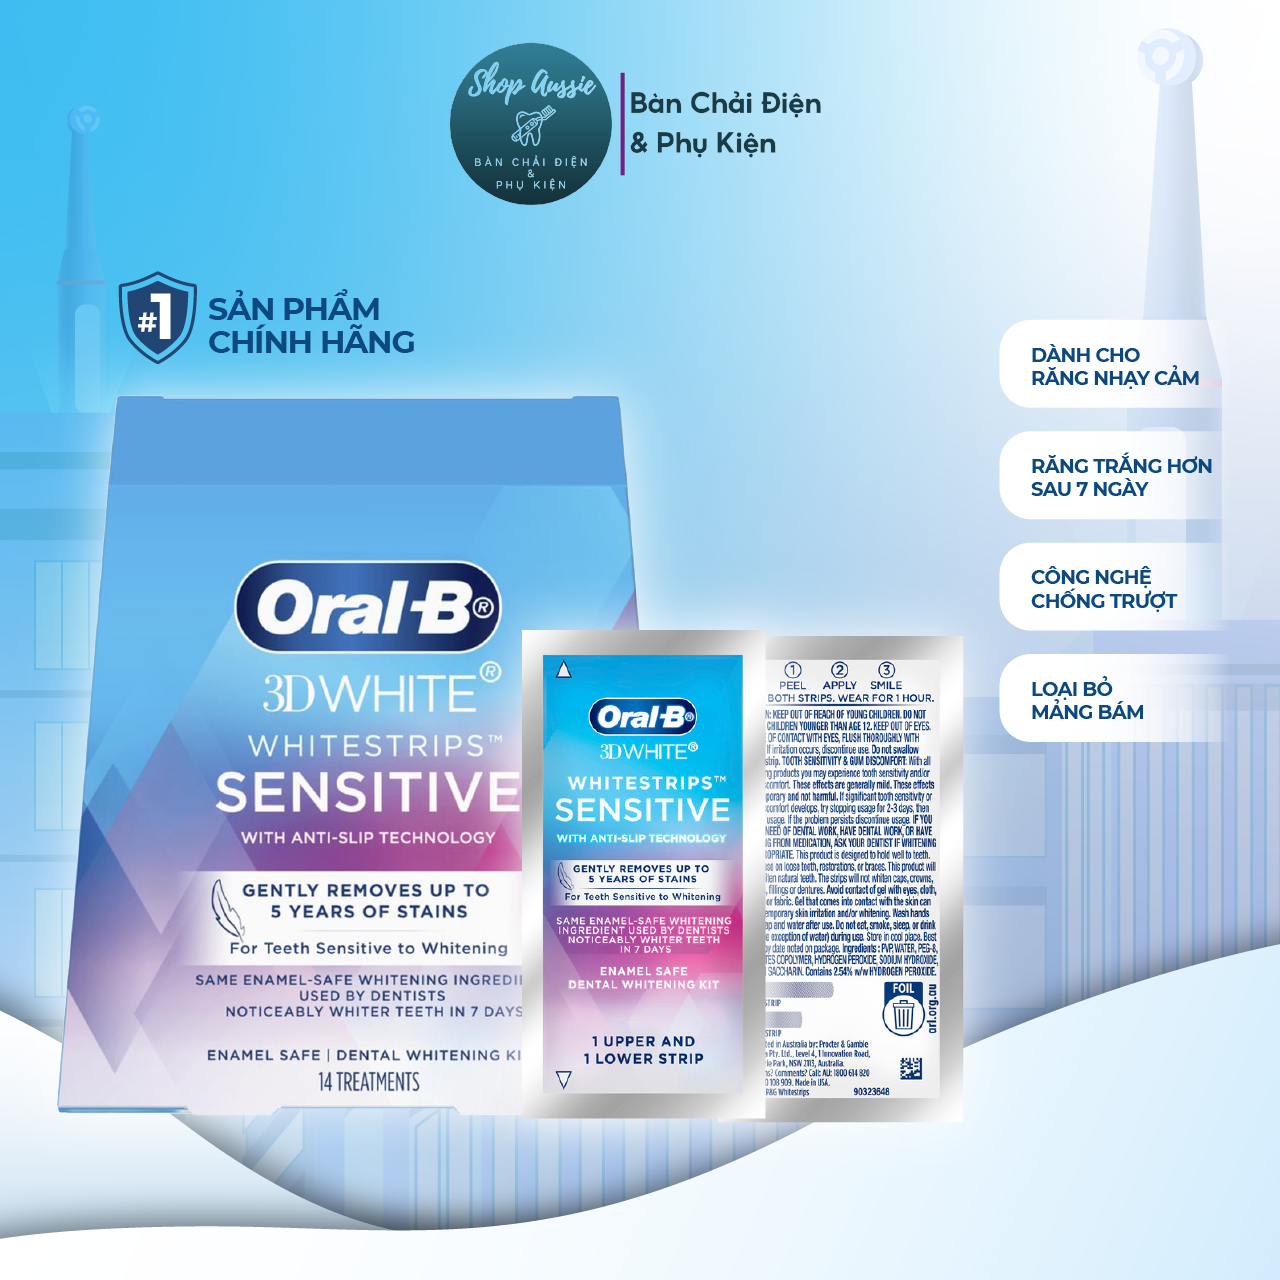 Miếng dán trắng răng Oral-B 3DWhite Whitestrips Sensitive - Dành Cho Răng Nhạy Cảm, Răng Trắng Sau 7 Ngày